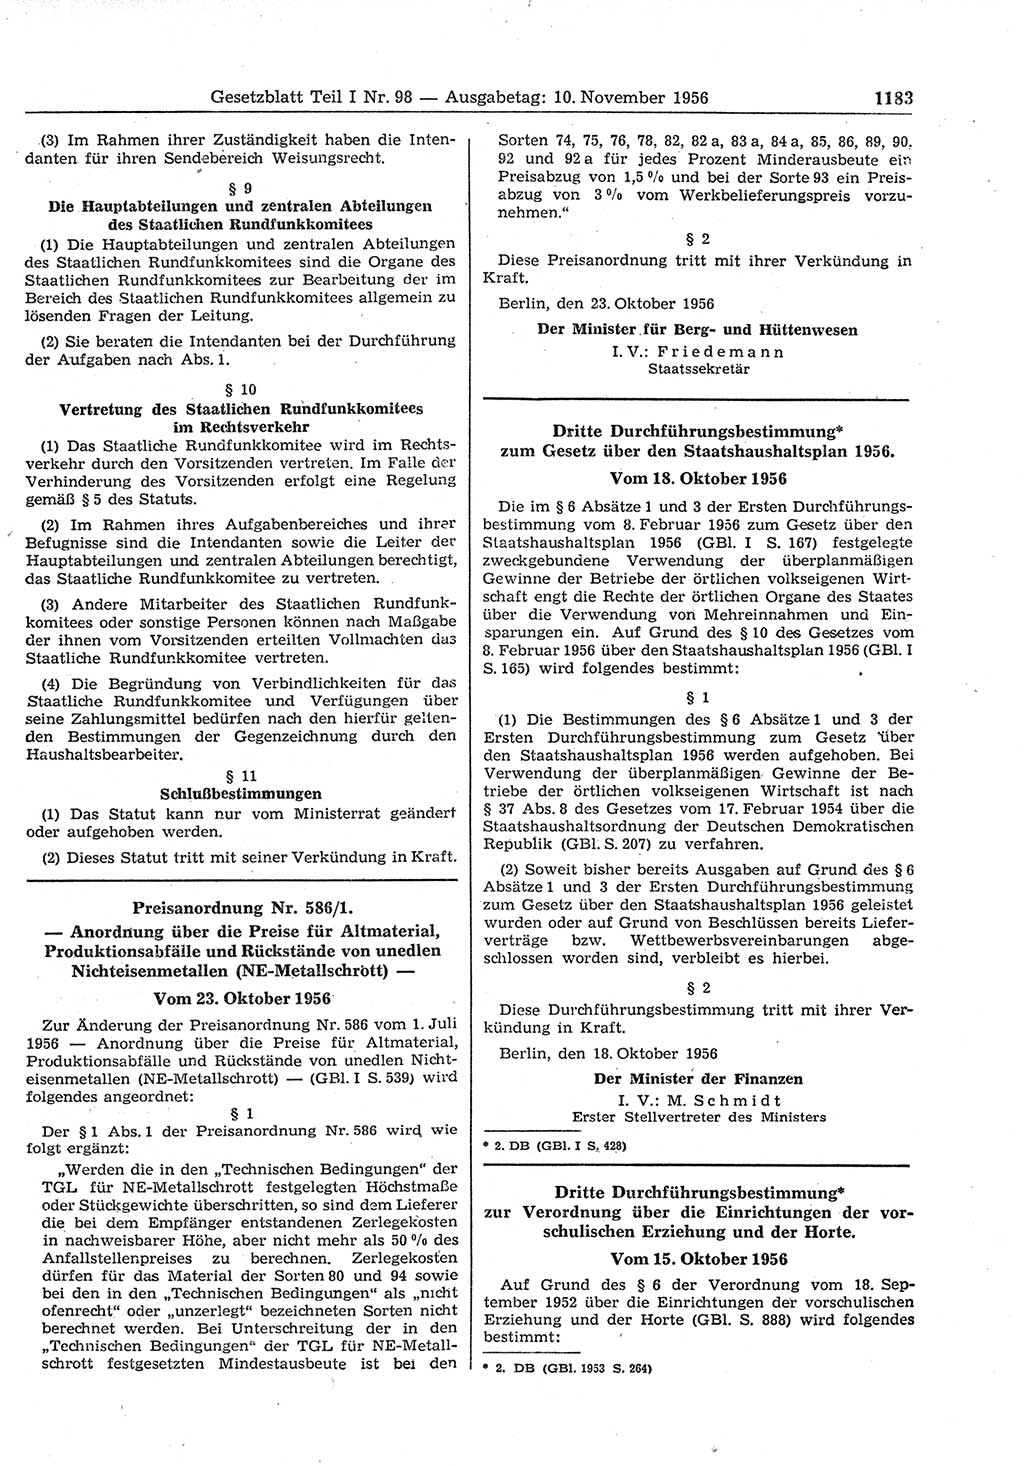 Gesetzblatt (GBl.) der Deutschen Demokratischen Republik (DDR) Teil Ⅰ 1956, Seite 1183 (GBl. DDR Ⅰ 1956, S. 1183)